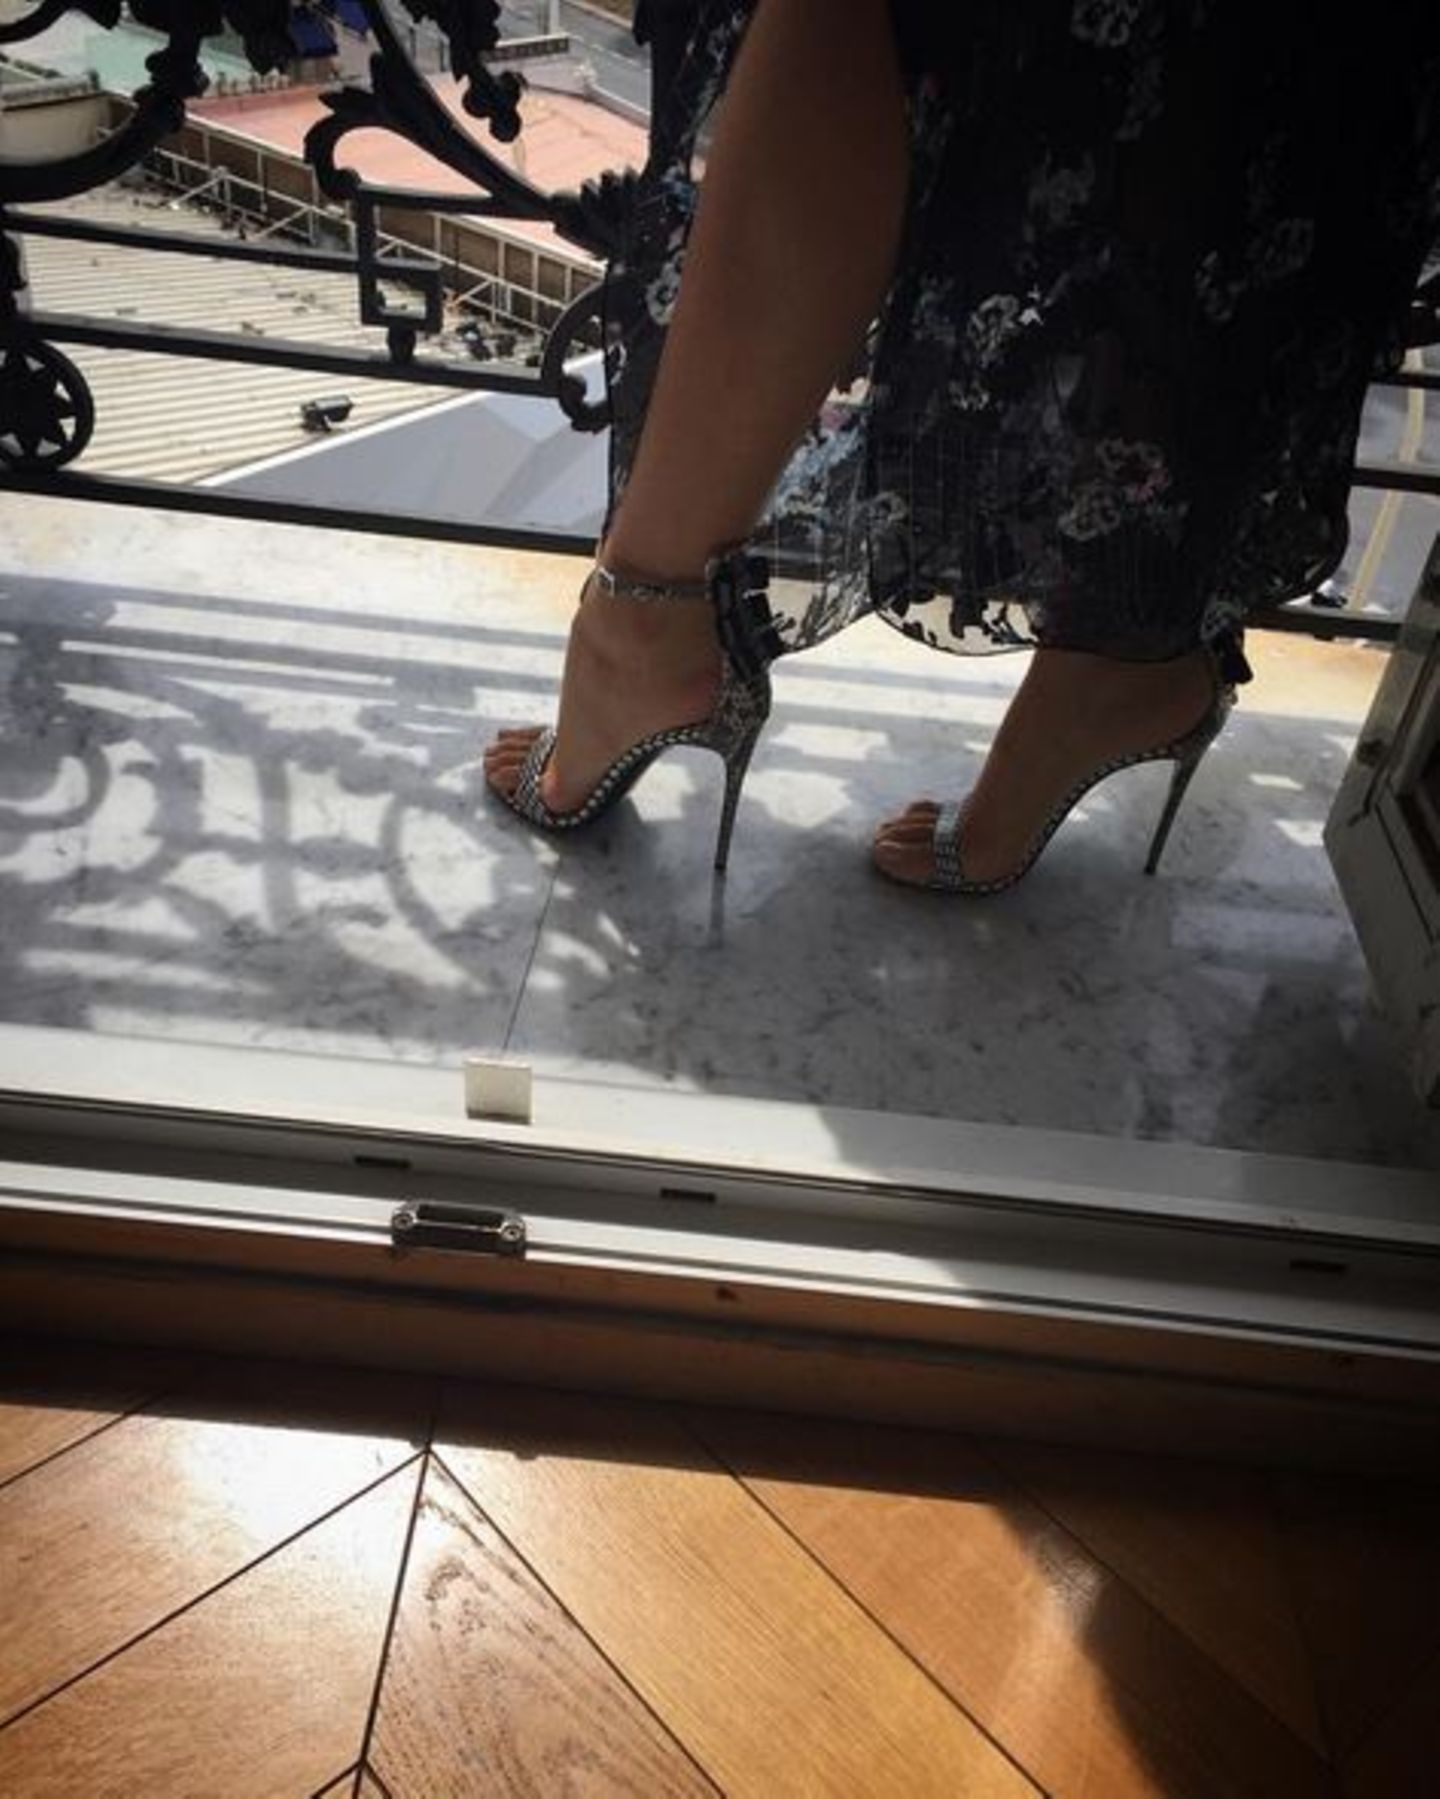 Blake Lively dokumentiert ihre Garderobe in Cannes. Hier ist der Fokus auf den Schuhen.